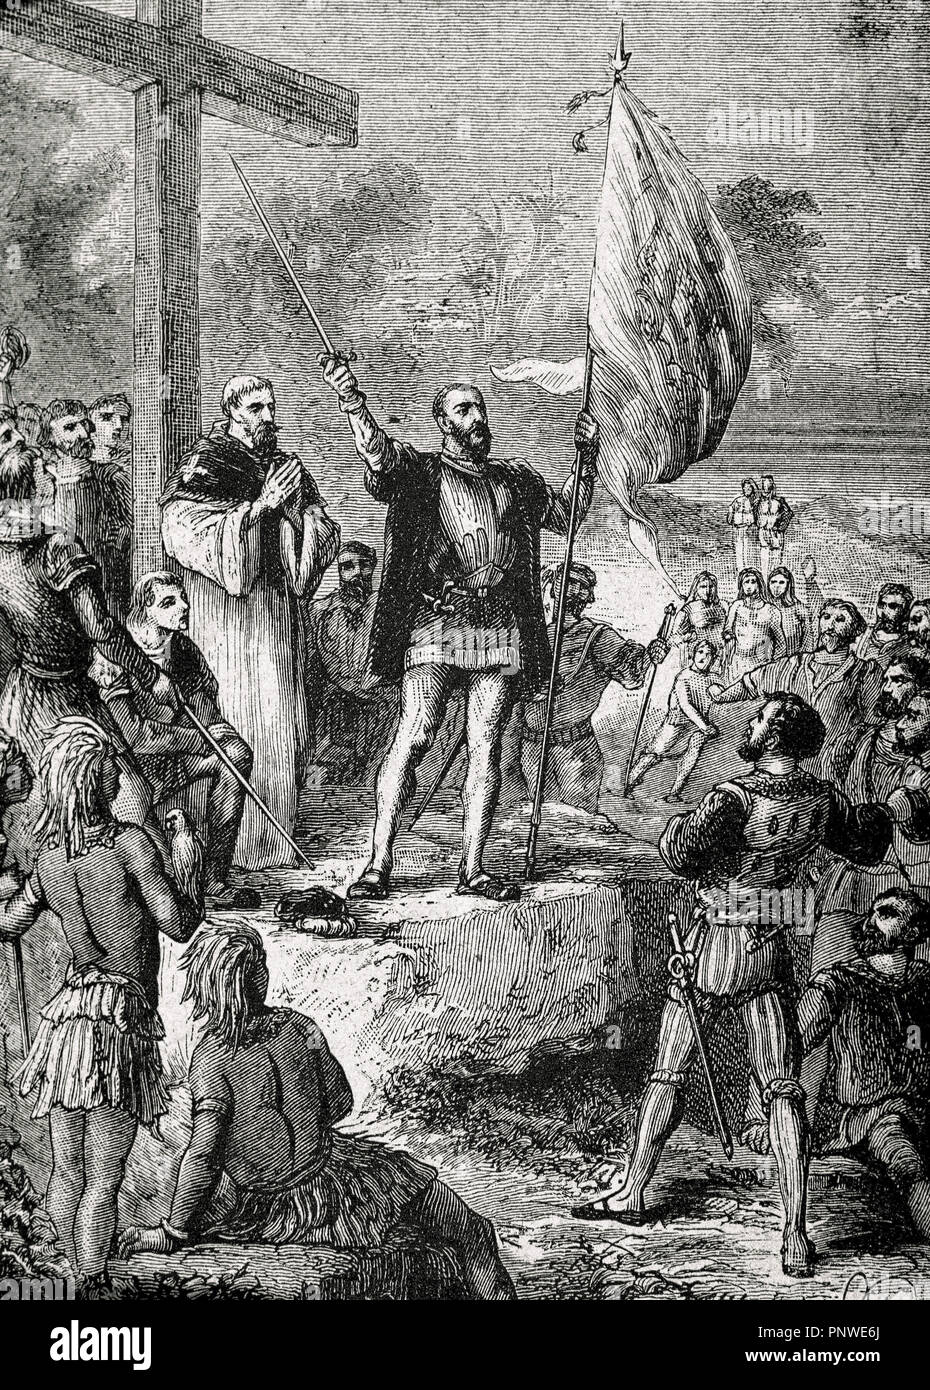 Pedro Alvares Cabral (ca.1467-1520). Navegante y explorador portugués. Descubridor de Brasil. Cabral tomó posesión de Brasil. Grabado. Foto de stock